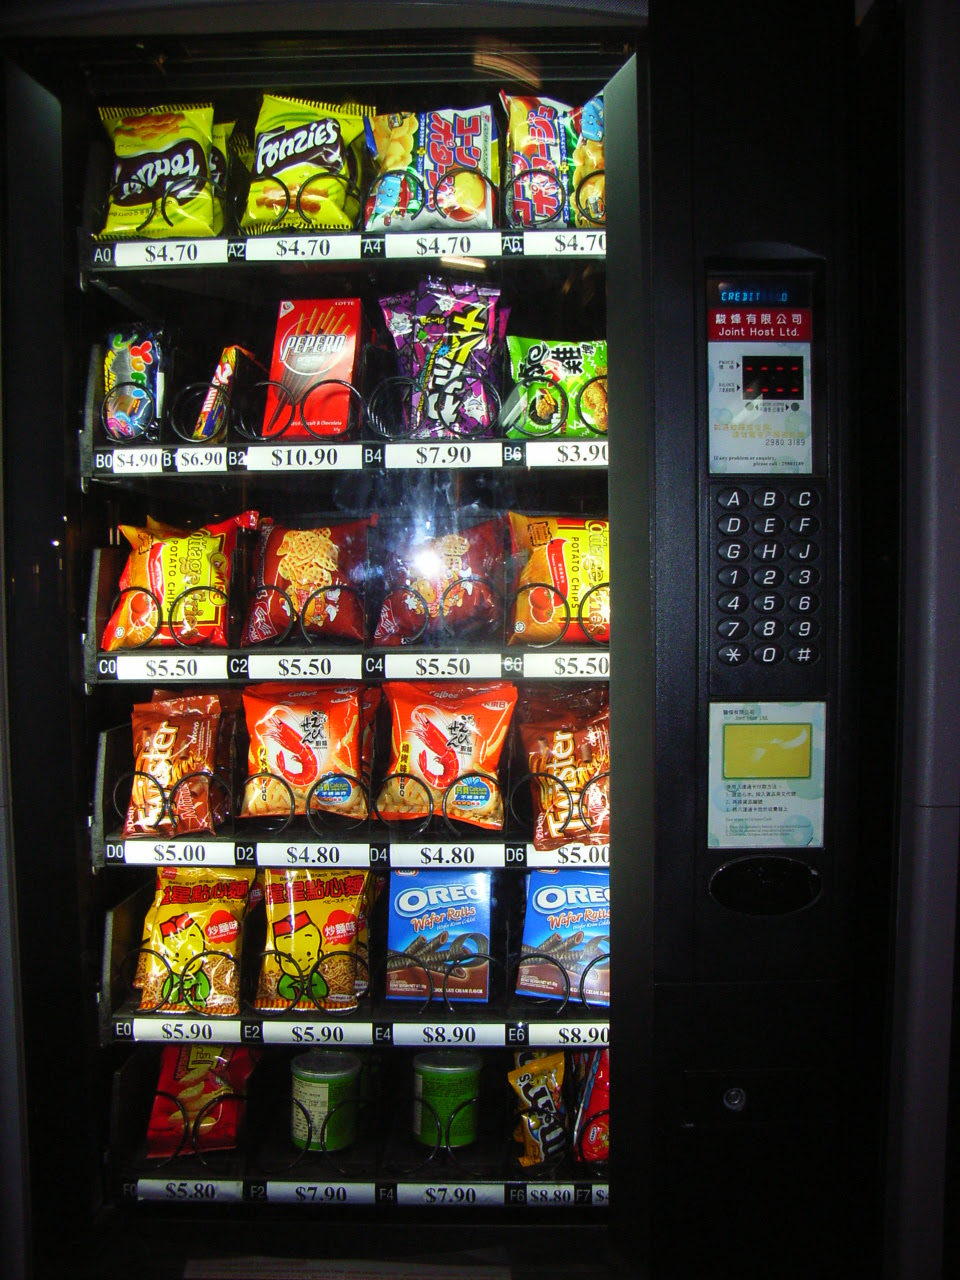 Quantas vending machines existem no Brasil?